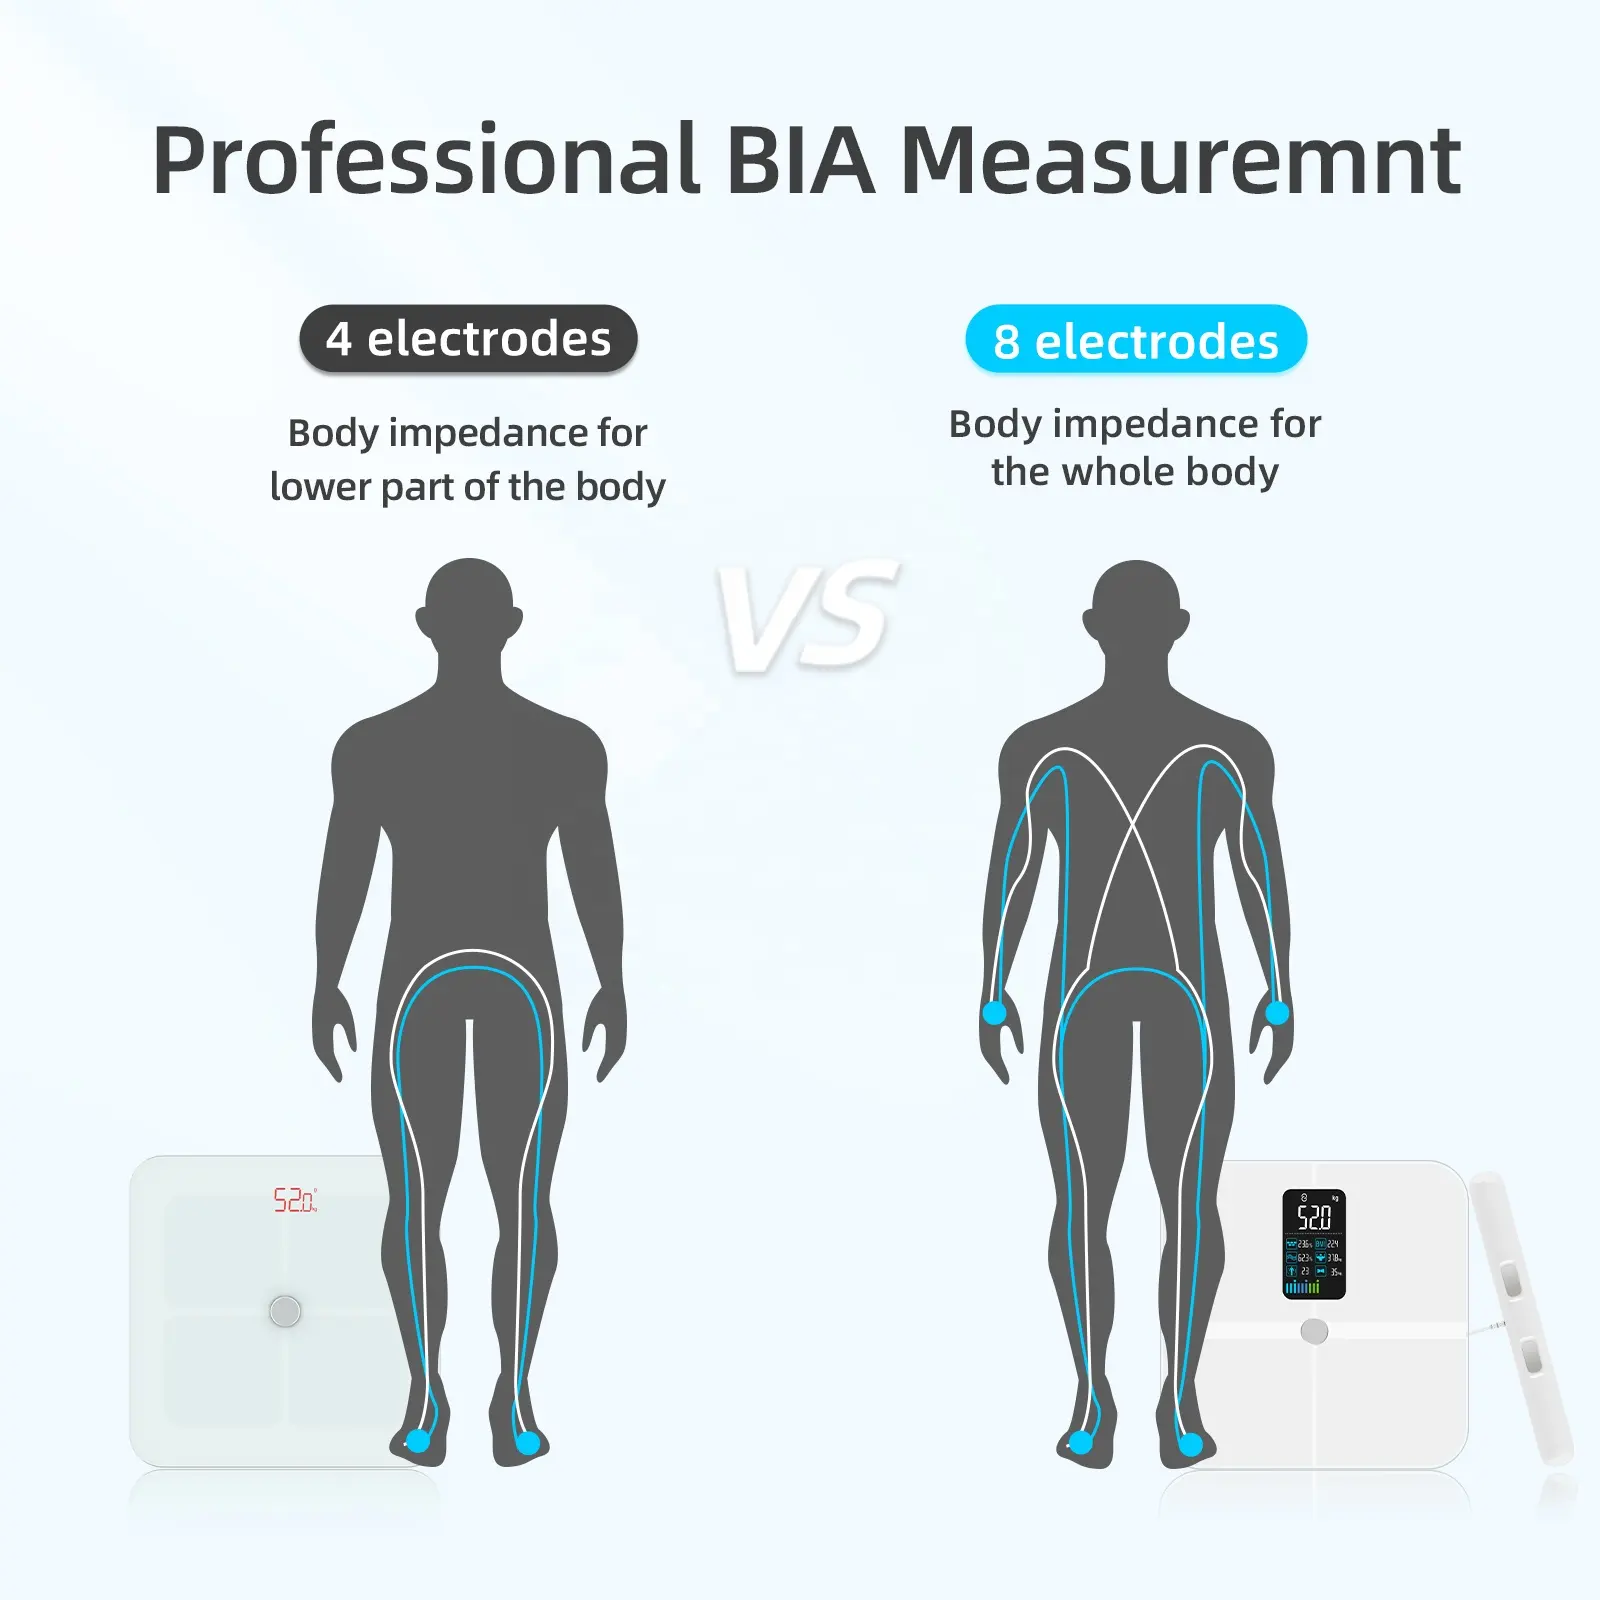 Timbangan berat badan Digital 180Kg profesional untuk rumah tangga bertenaga USB dengan tampilan kaca aplikasi pelacak BMI pribadi